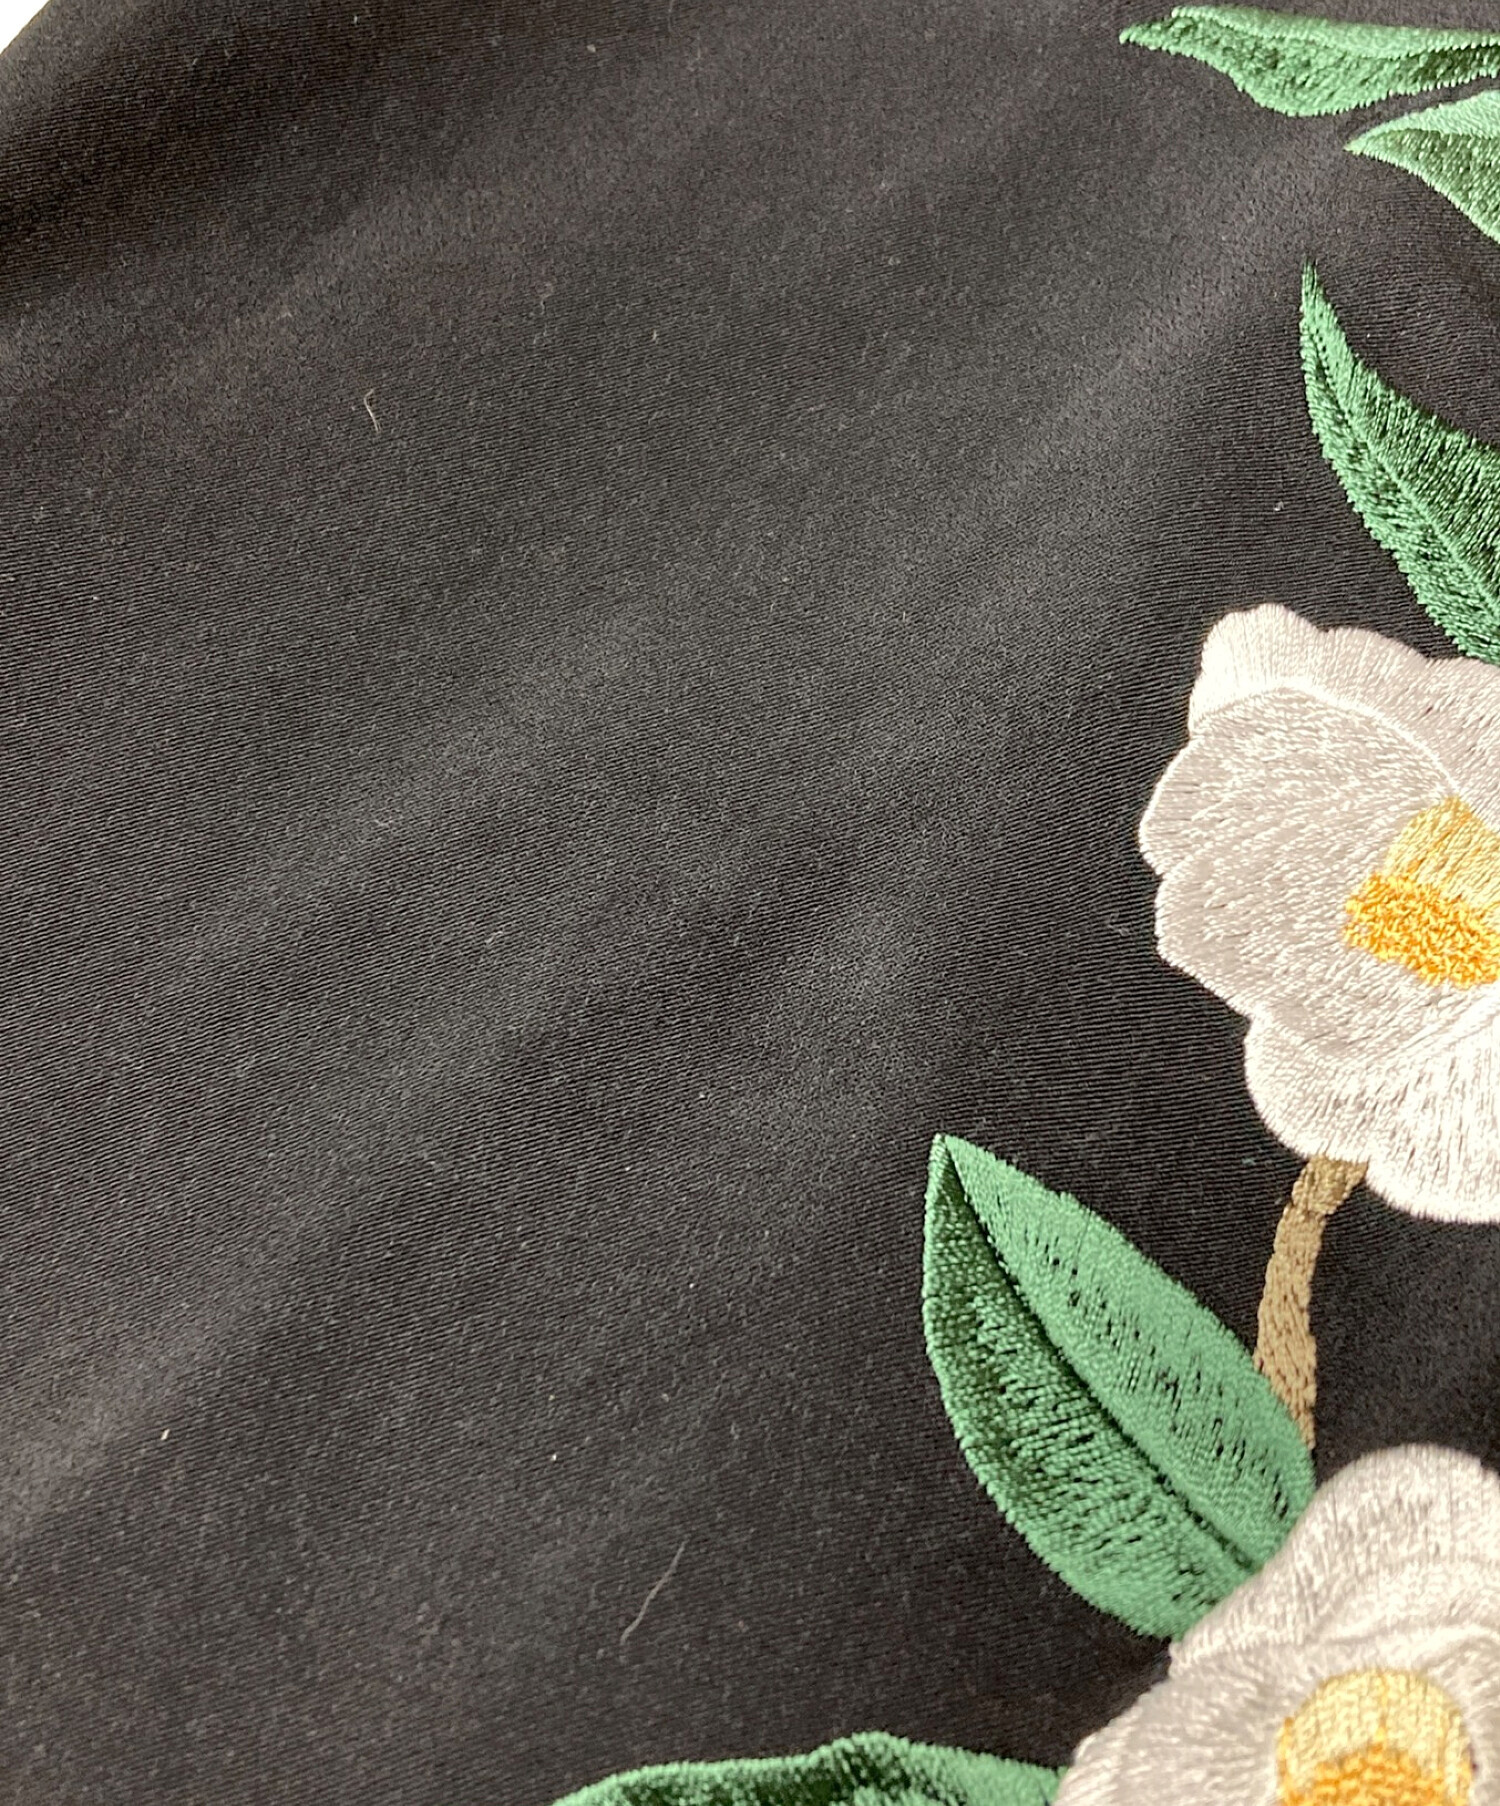 iCONOLOGY (イコノロジー) 花を着るワンピース白椿 ブラック サイズ:2